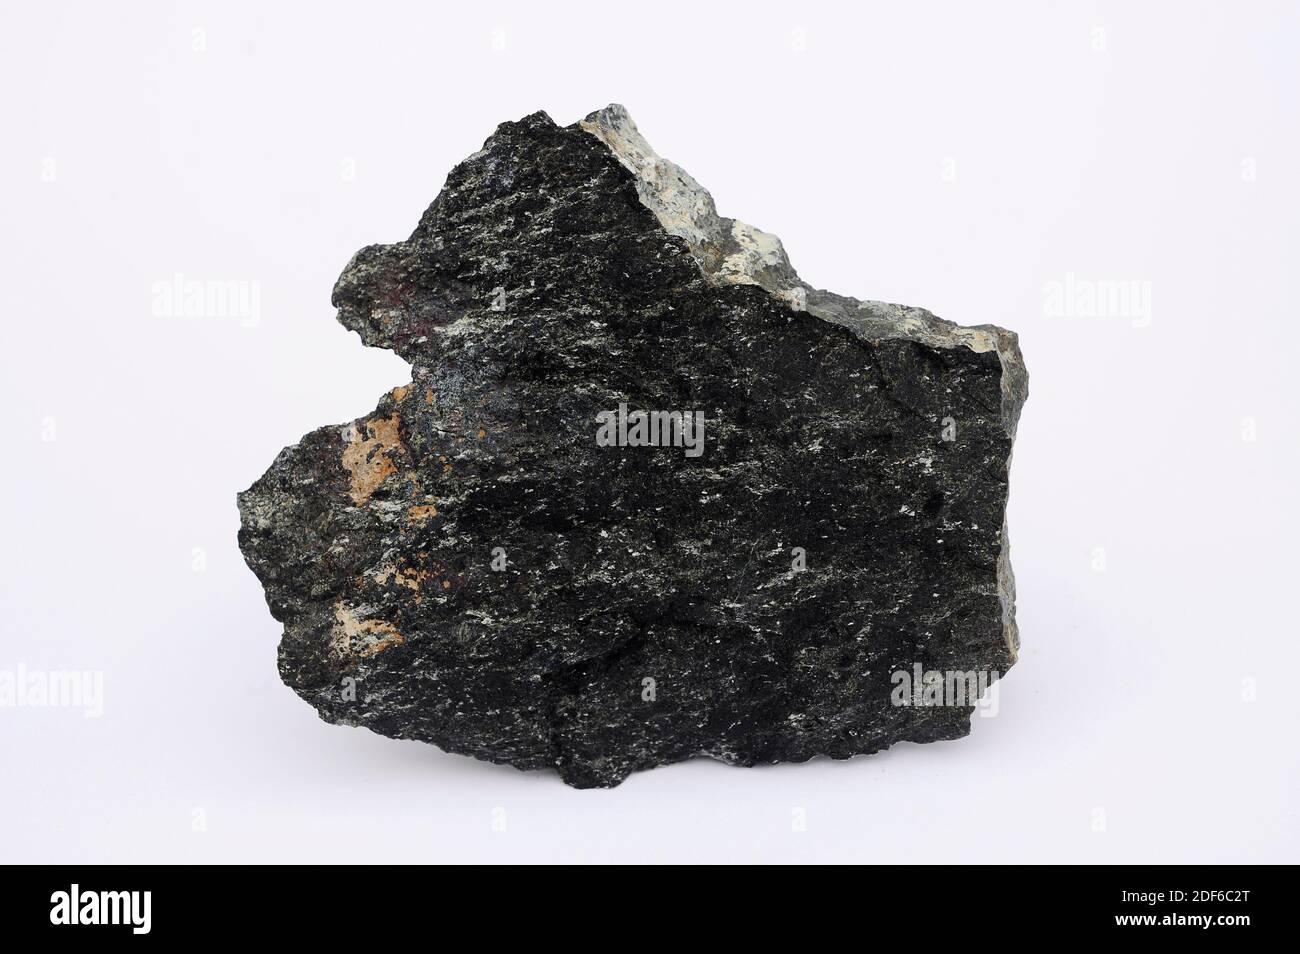 Dunit oder Olivinit ist ein Plutongestein, das überwiegend aus Olivin (Eisen-Magnesium-Silikat-Mineral) besteht. Diese Probe stammt aus Cabo Ortegal, La Stockfoto